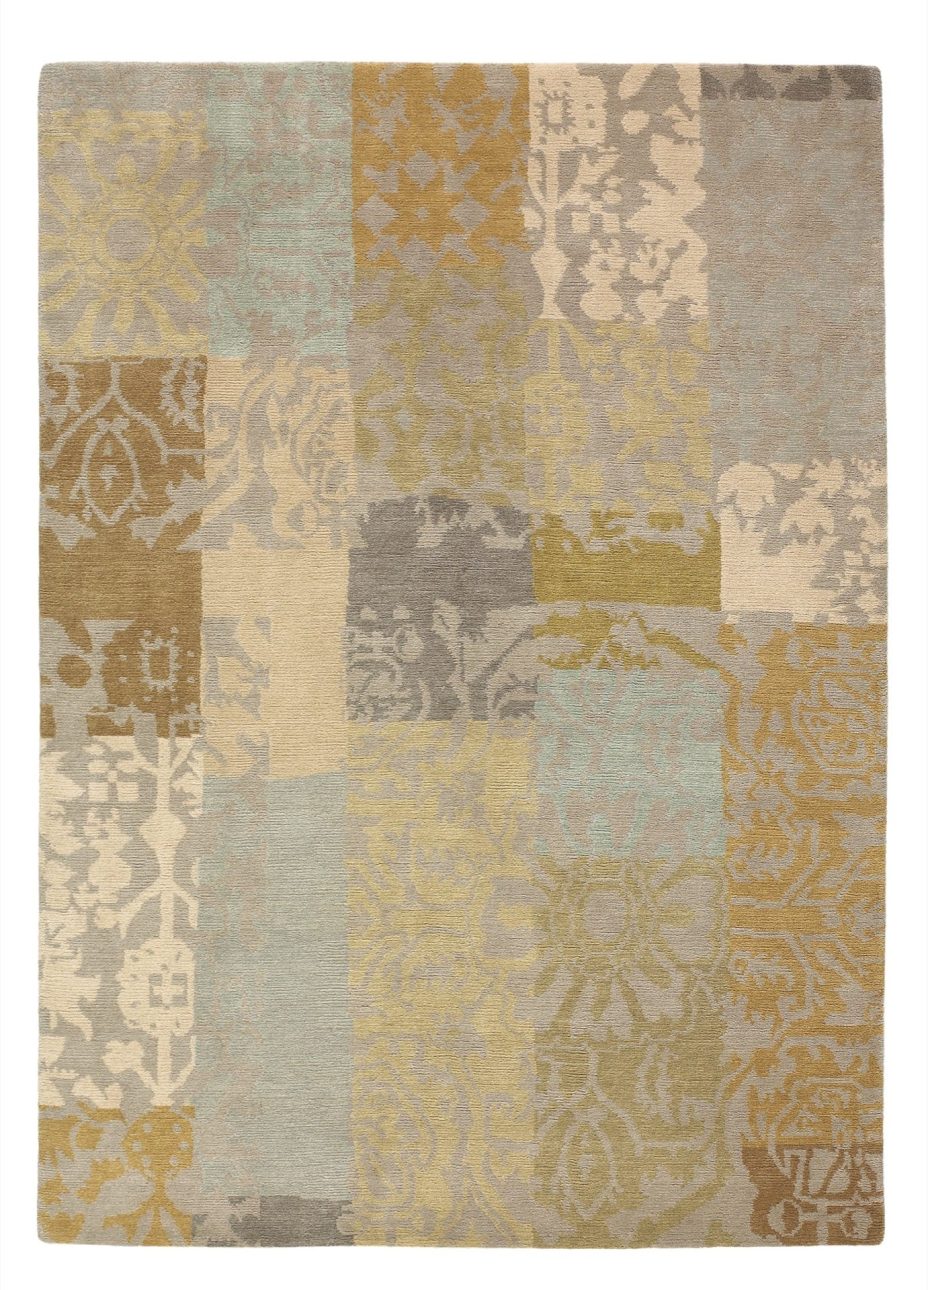 Yara Patchwork 194001 rug by Brink